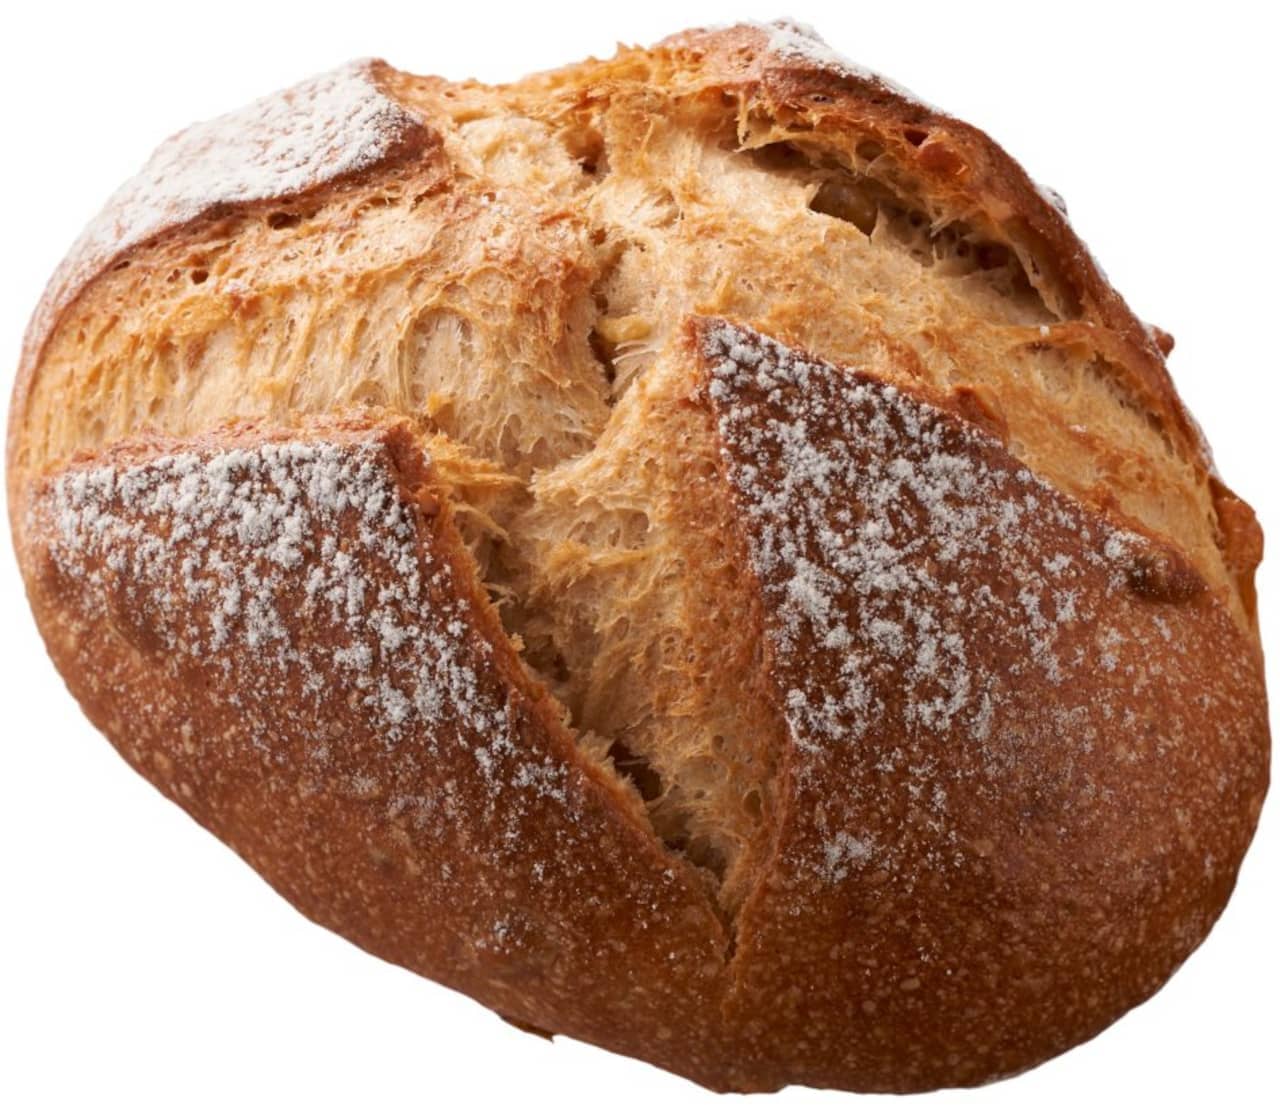 Saint-Germain January new bread summary